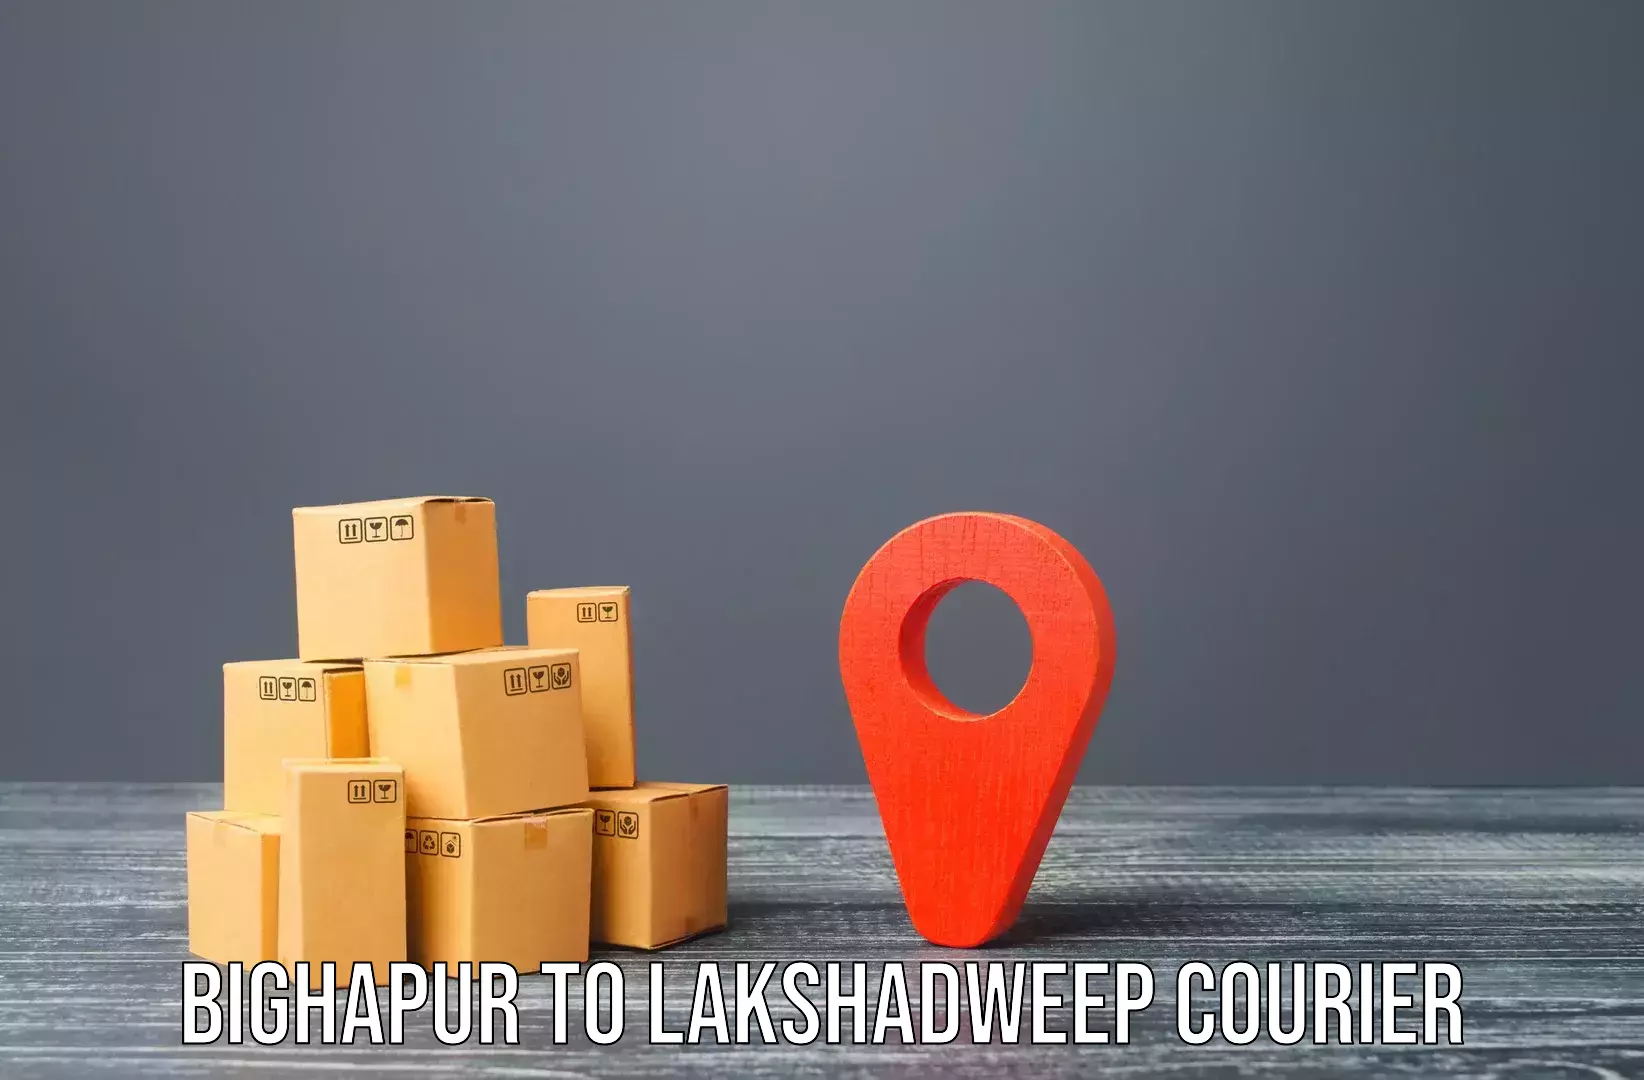 Home shifting services Bighapur to Lakshadweep